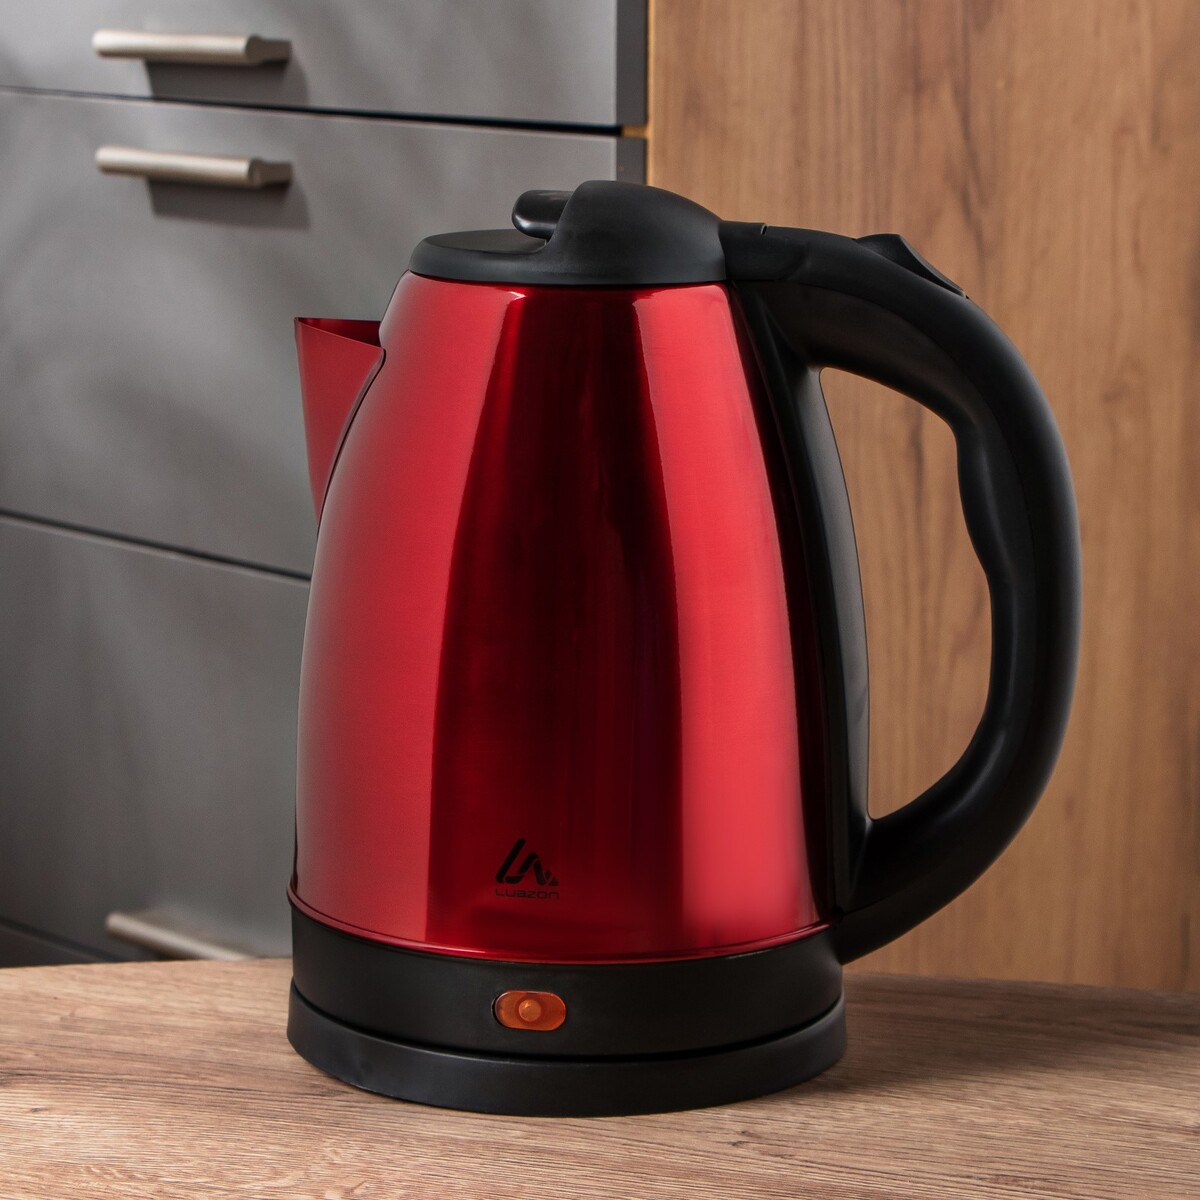 Чайник электрический luazon lsk-1804, металл, 1.8 л, 1500 вт, красный чайник электрический homestar hs 1041 металл 1 8 л 1500 вт серебристо чёрный